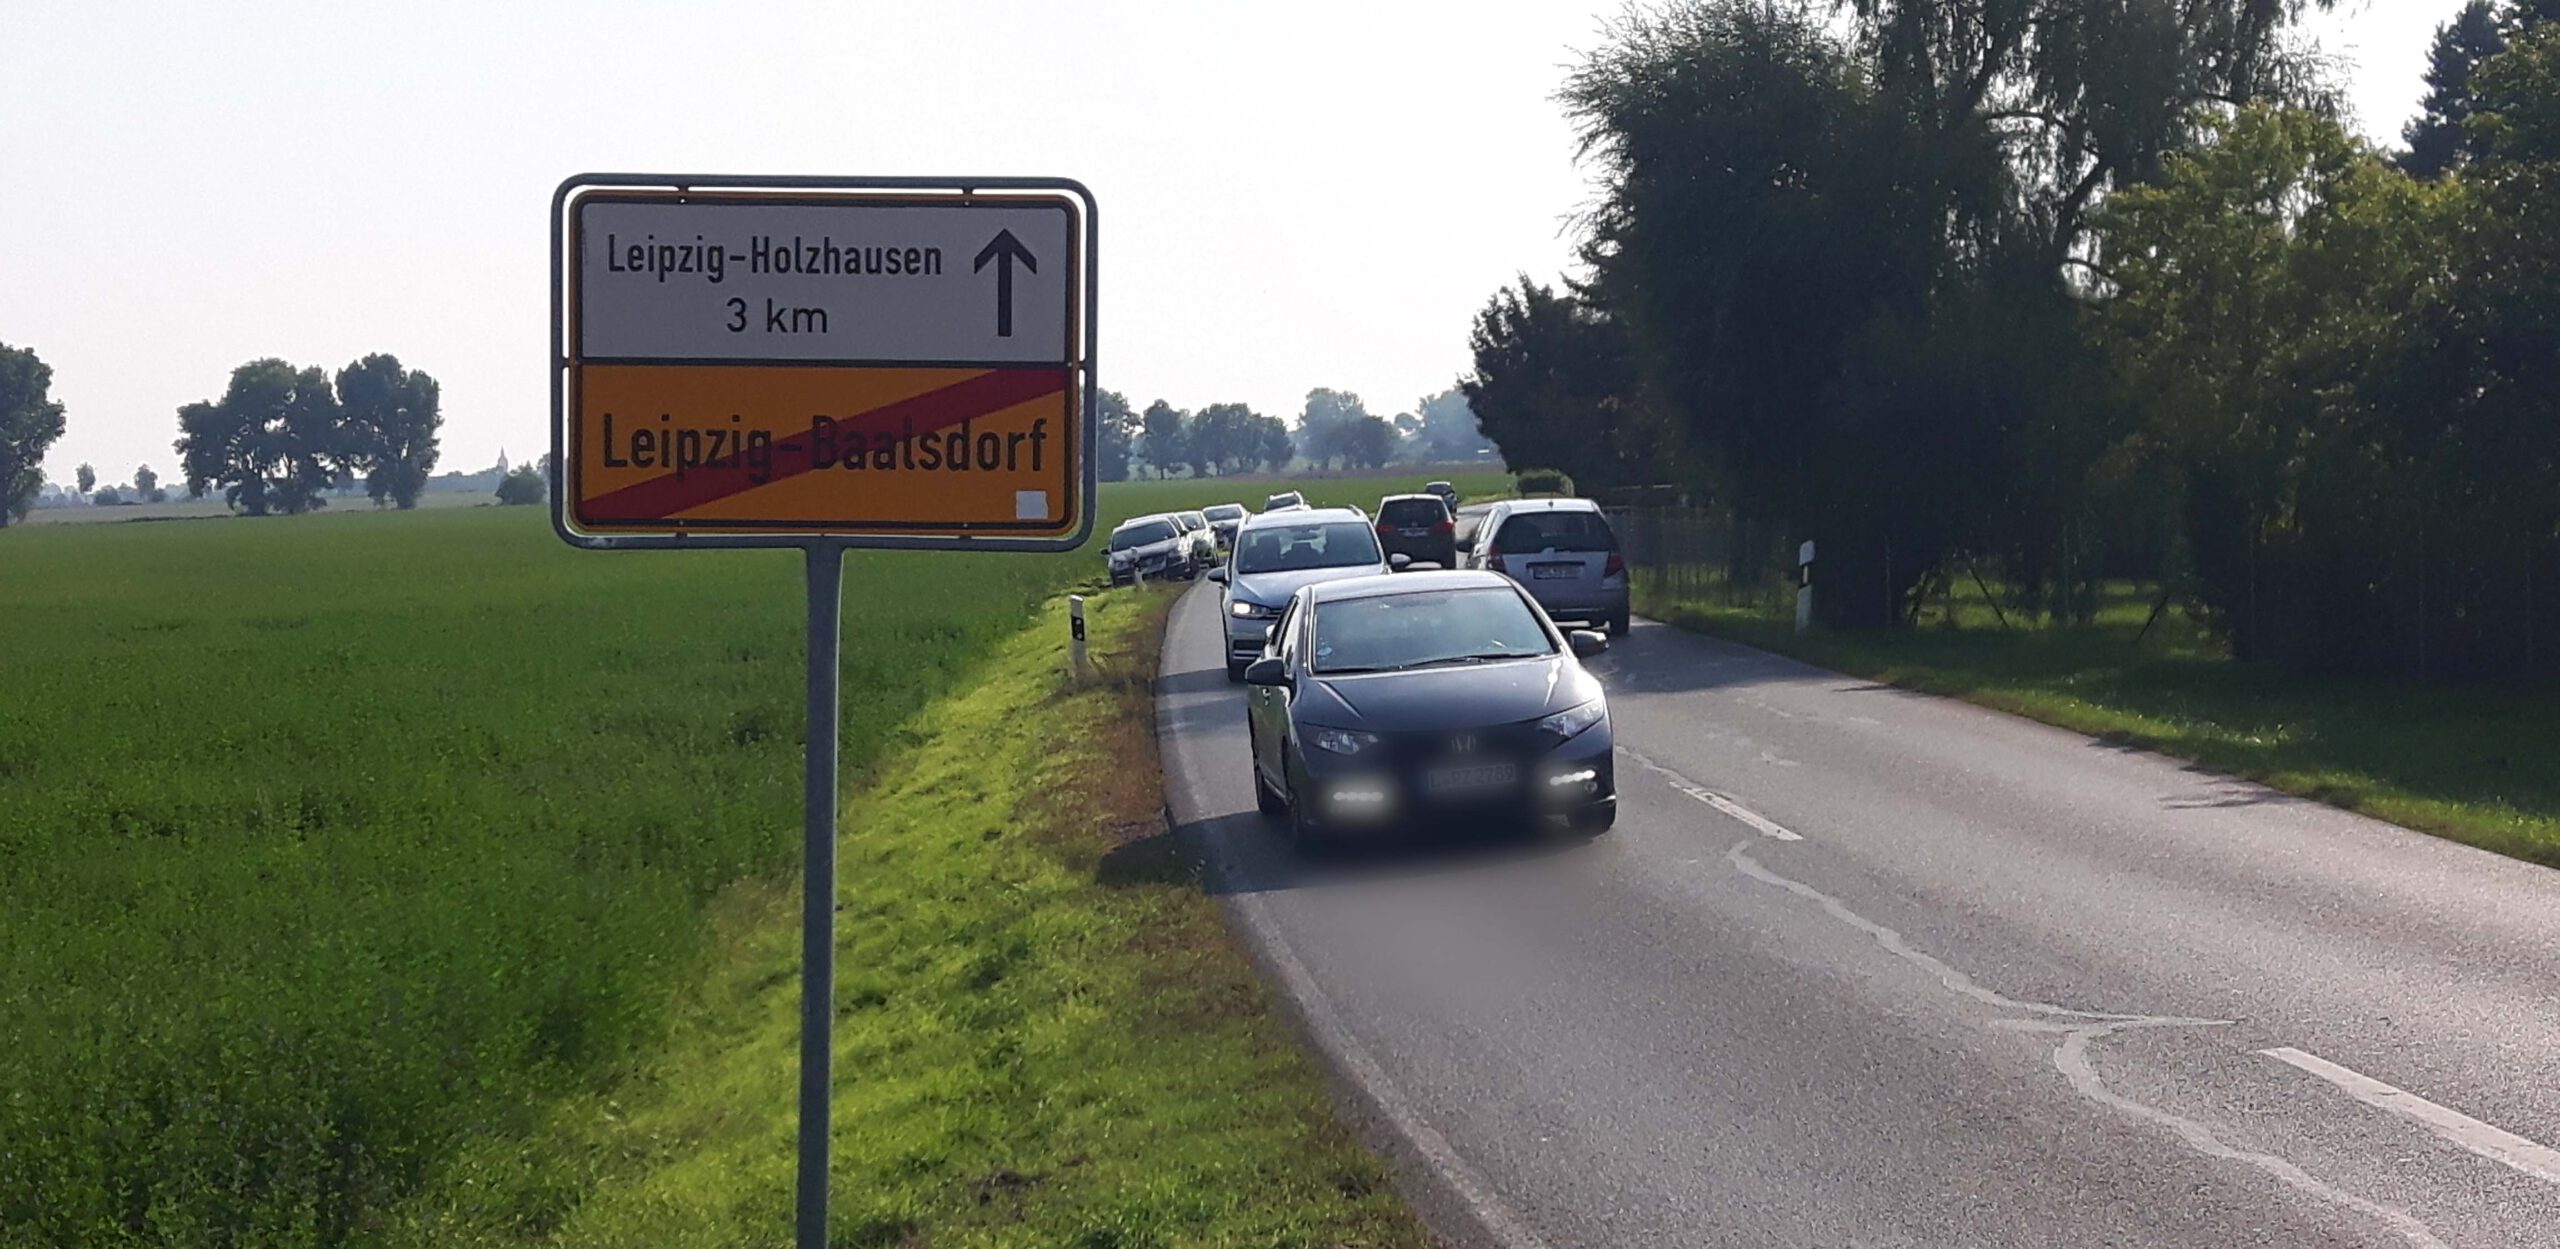 Holzhausen-Baalsdorf: Der Radweg kann gebaut werden